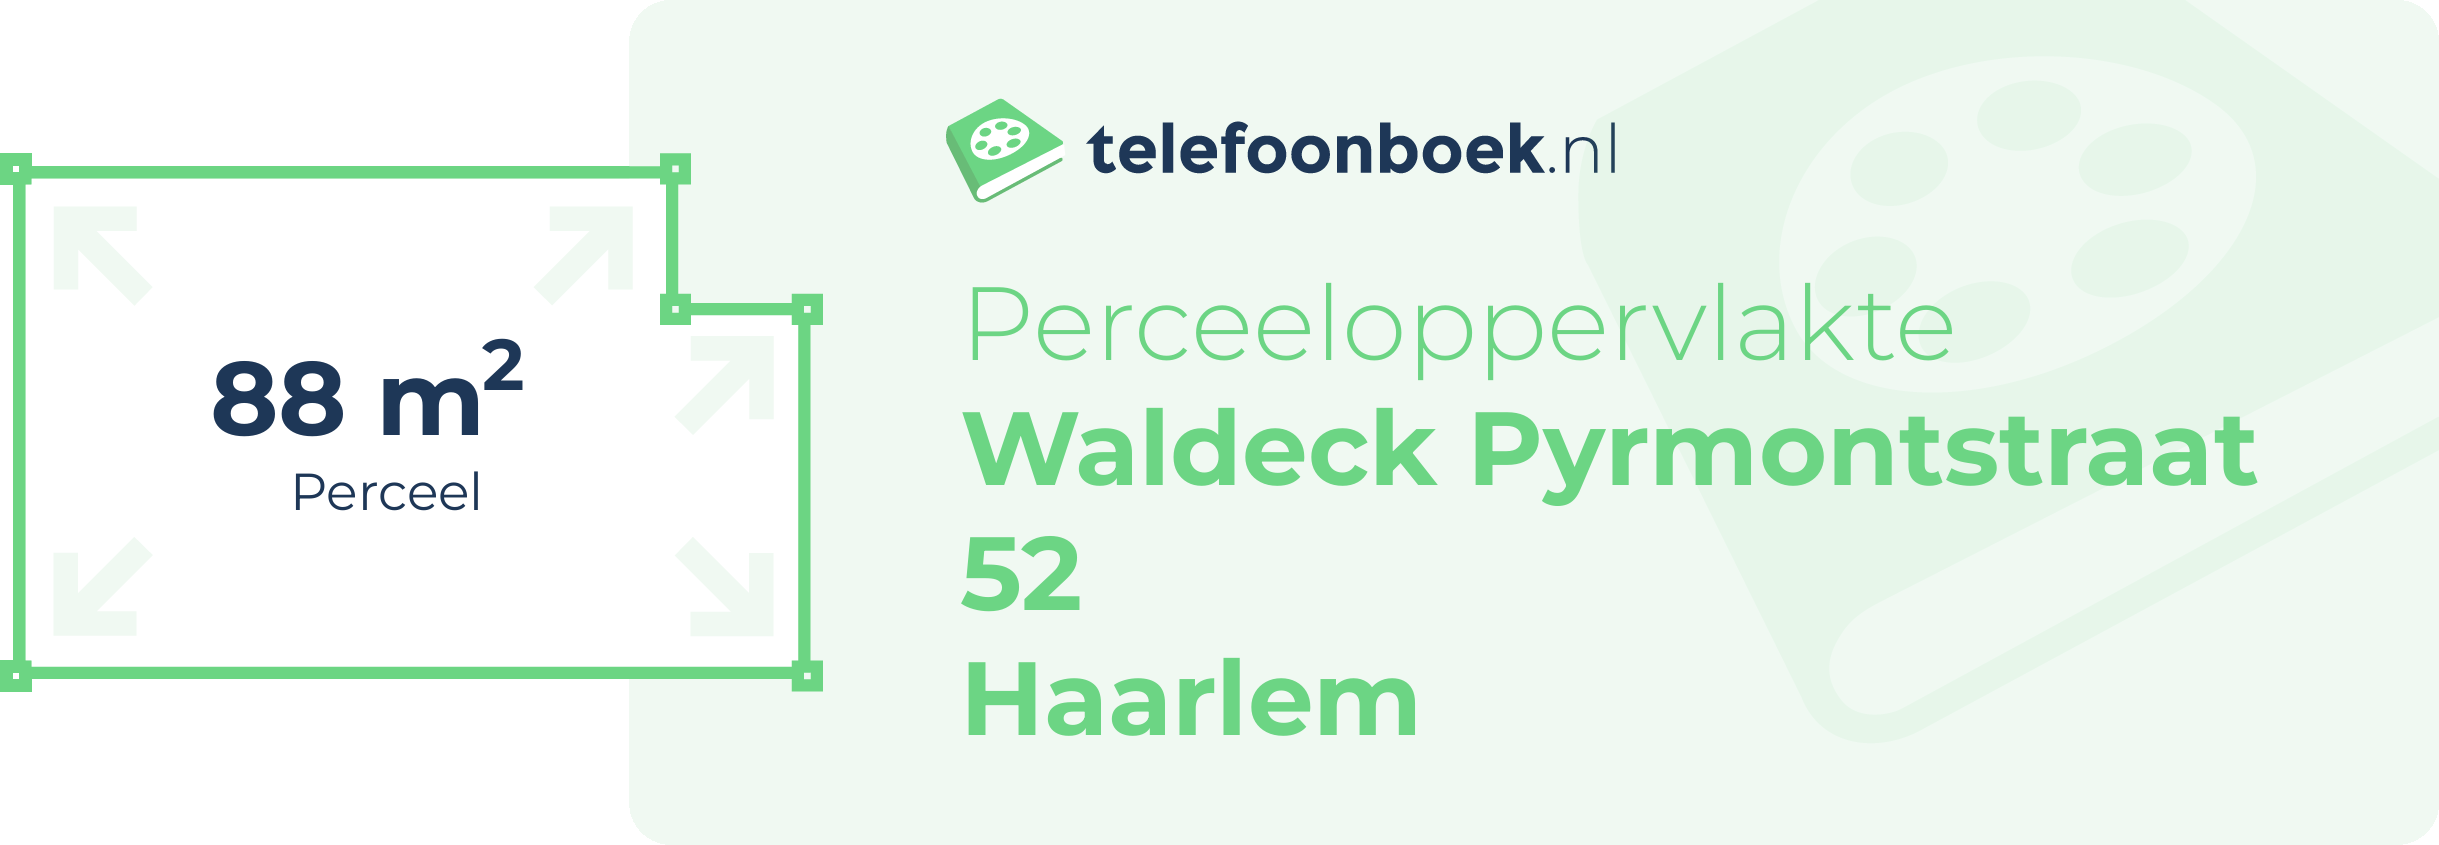 Perceeloppervlakte Waldeck Pyrmontstraat 52 Haarlem